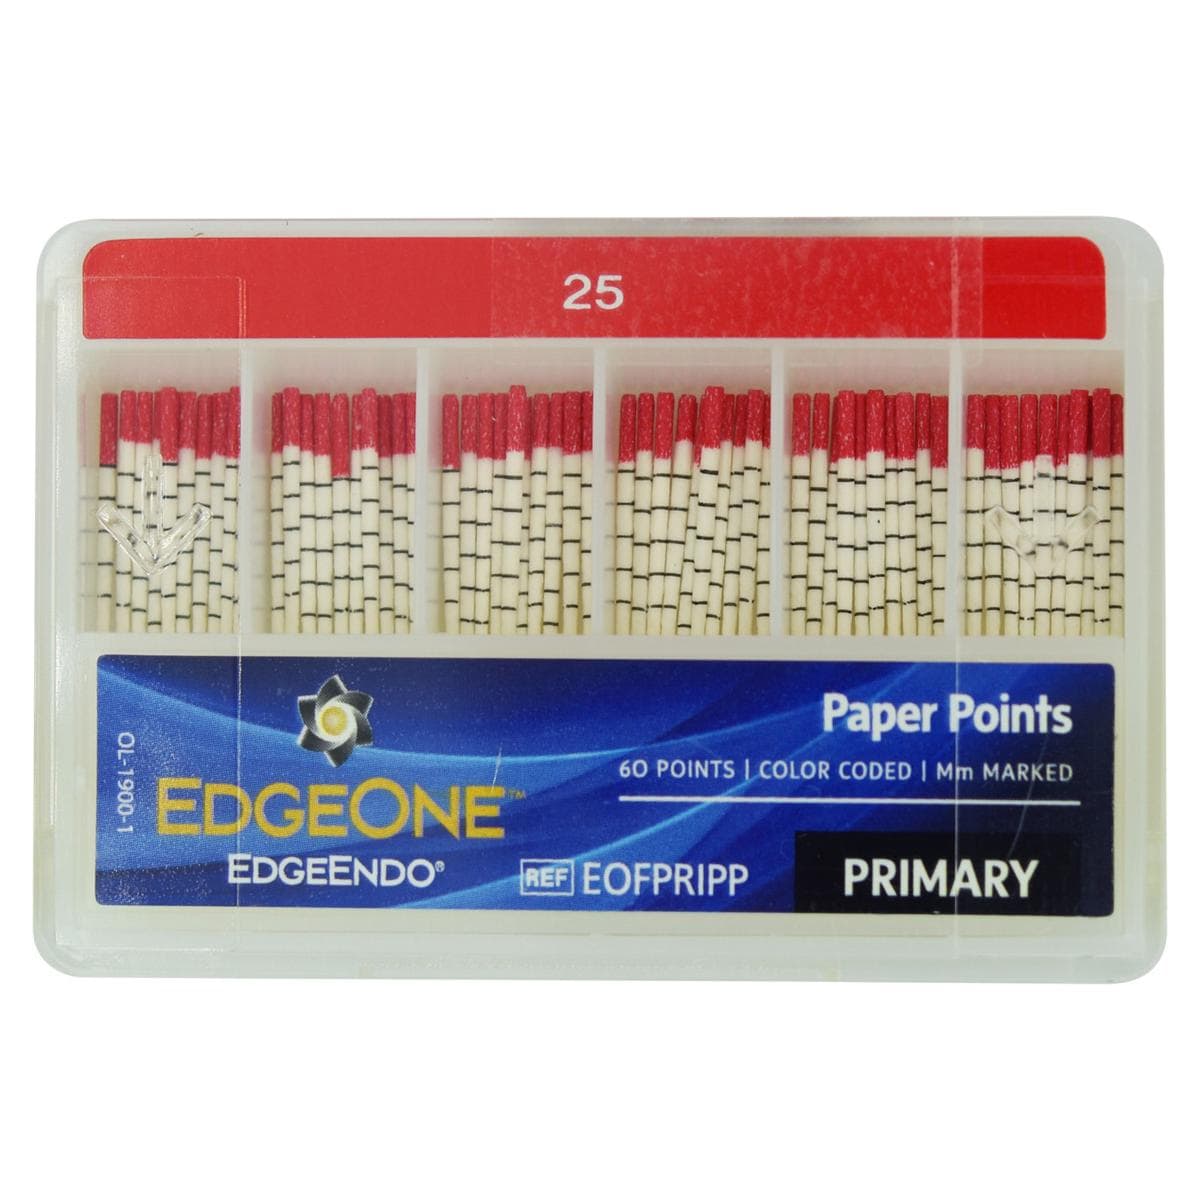 EdgeOne Fire Paper Point - Primary, 60 stuks